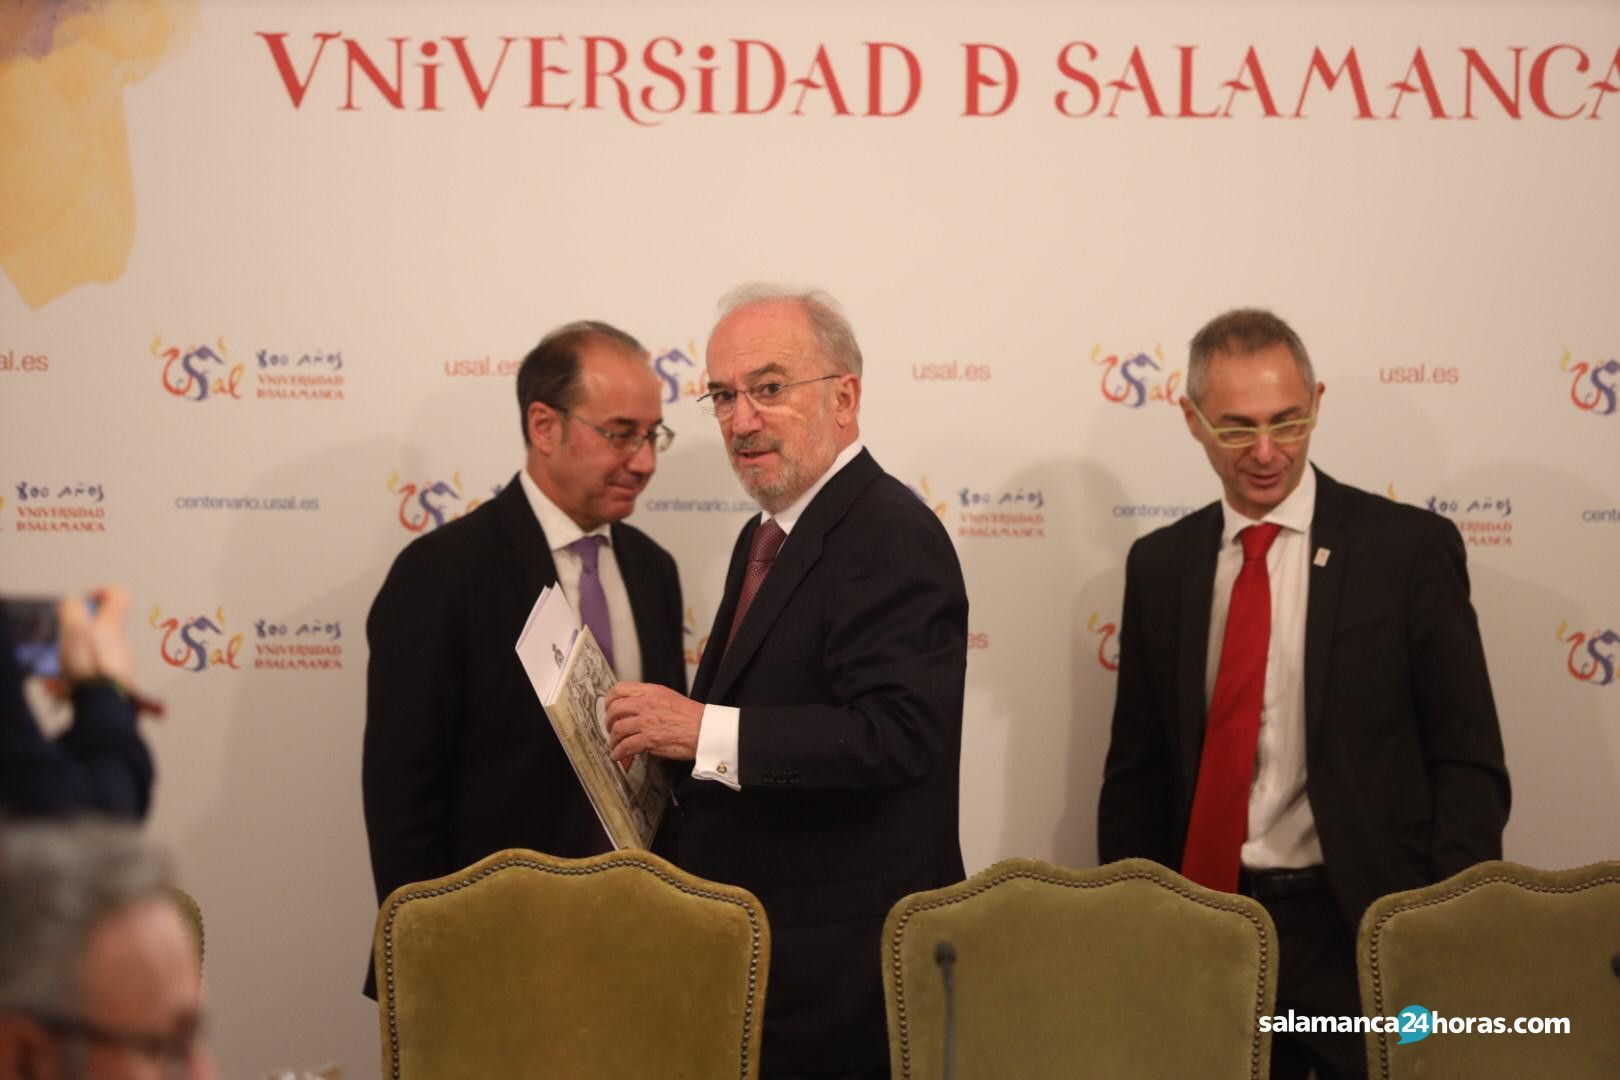  Rueda de prensa de Santiago Muñoz Machado antes de ser investido doctor honoris causa 3 